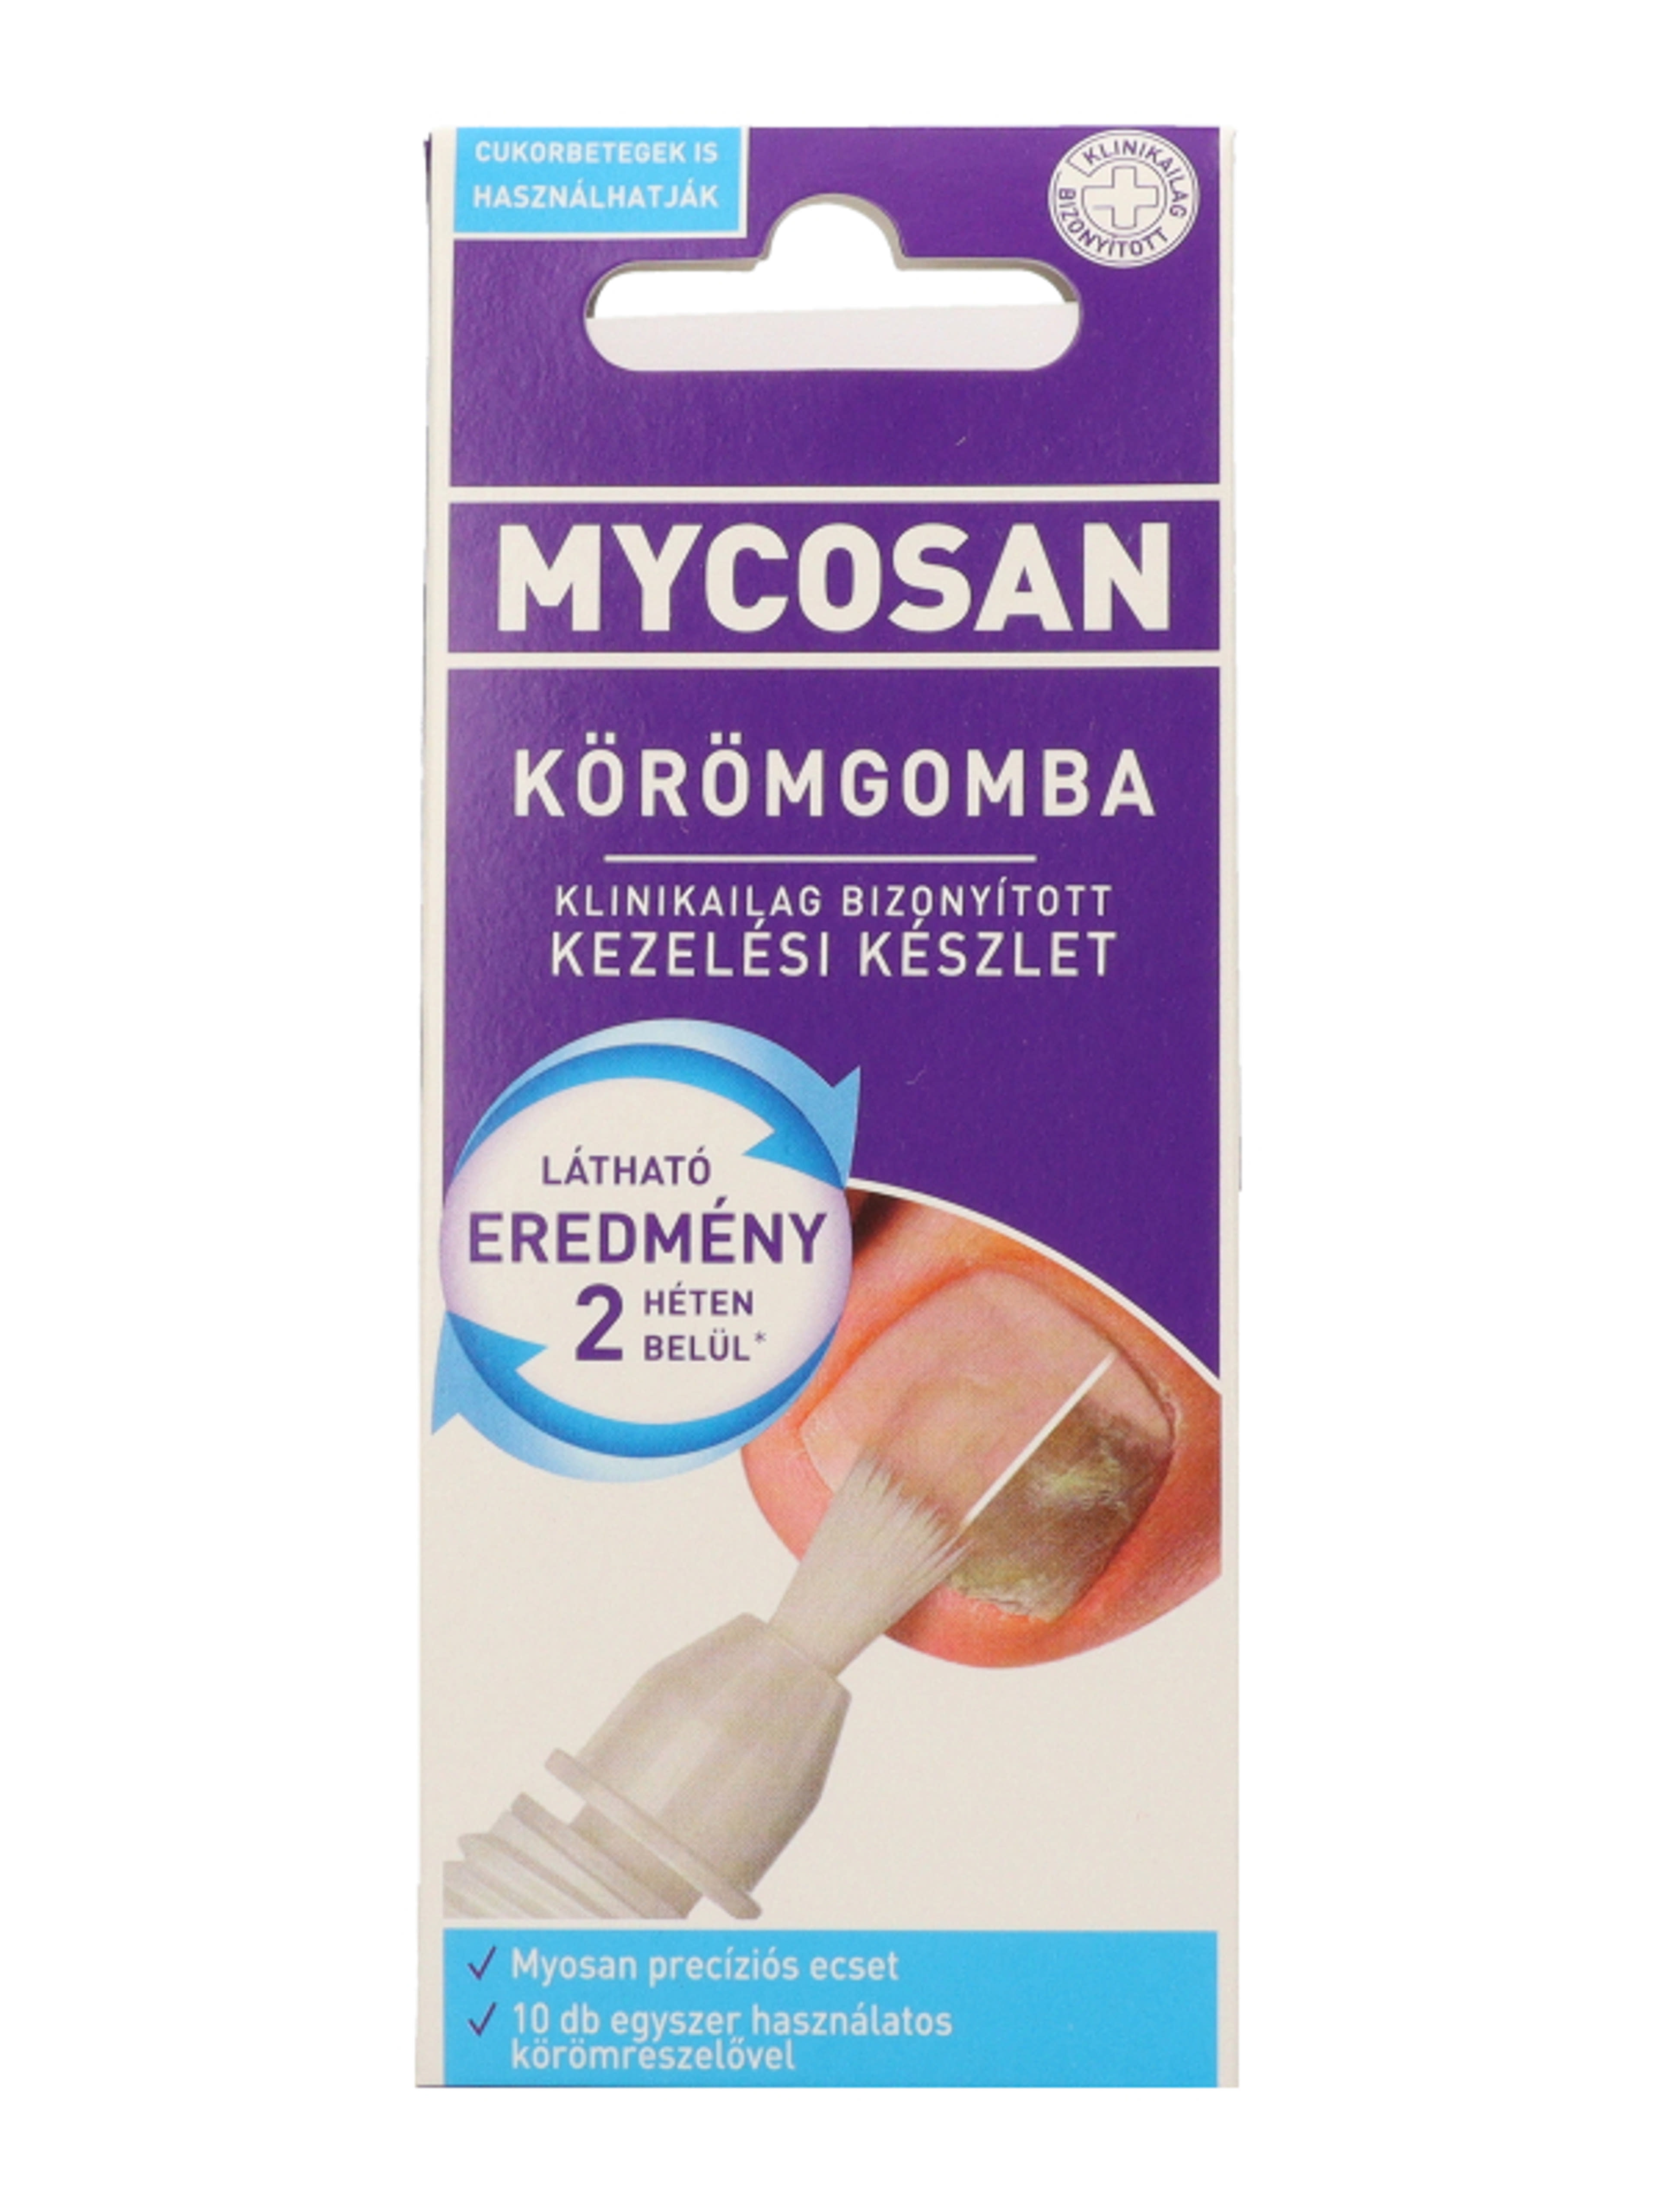 Mycosan körömgomba elleni ecsetelnő - 5 ml-2